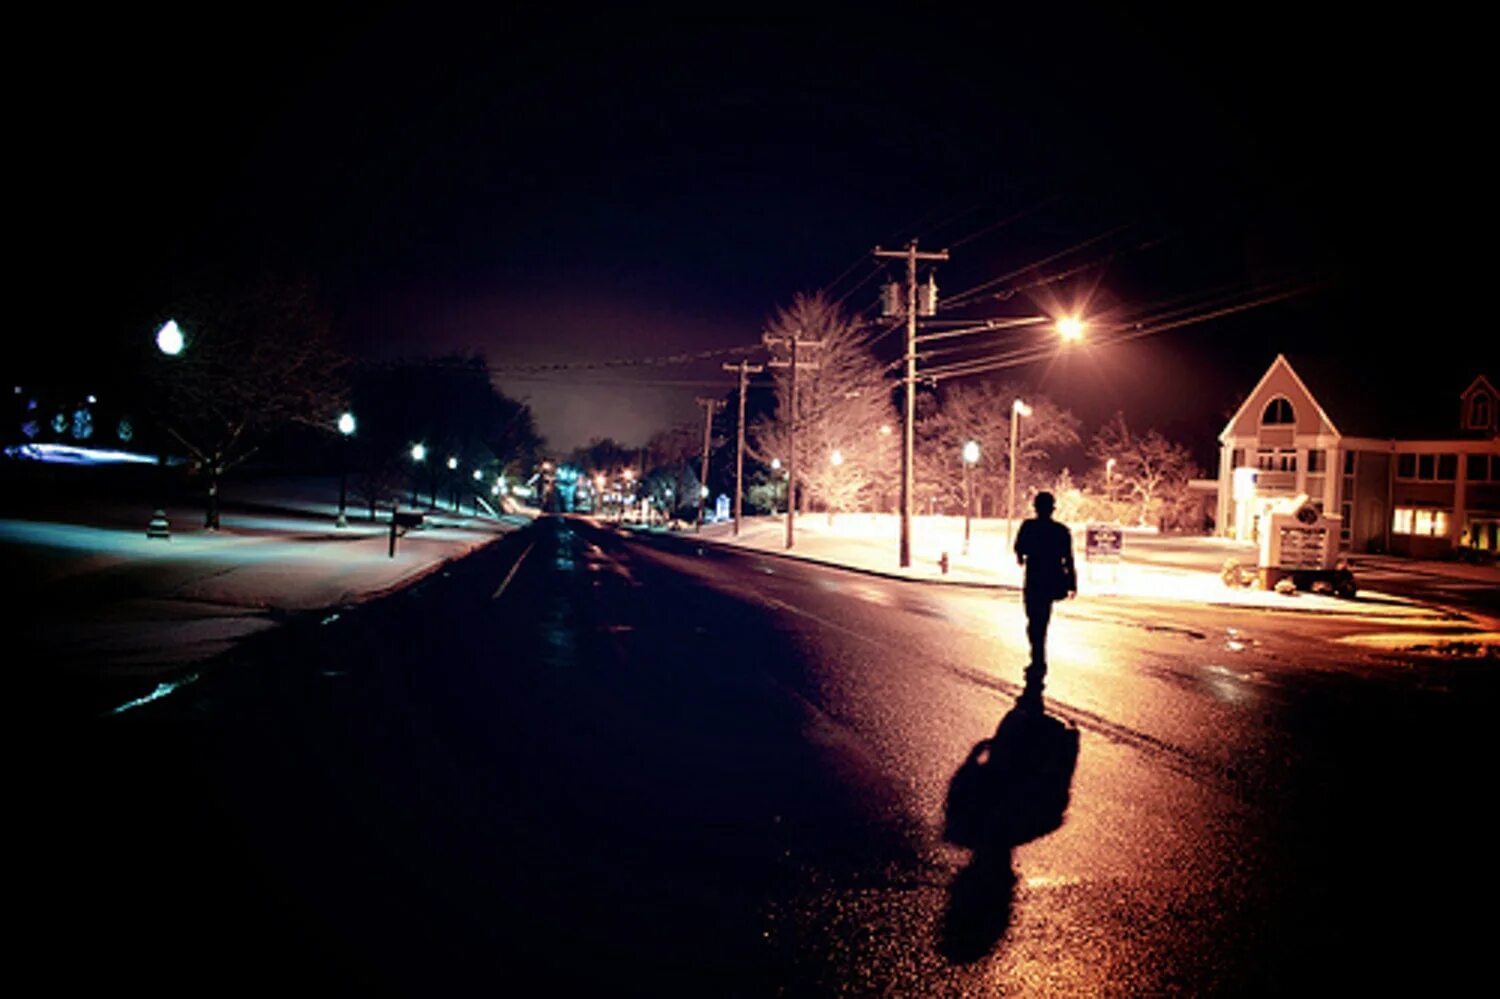 Вечером возвращаясь с прогулки. Прогулка ночью. Человек идет по ночной улице. Человек на ночной дороге. Парень идет по ночной дороге.